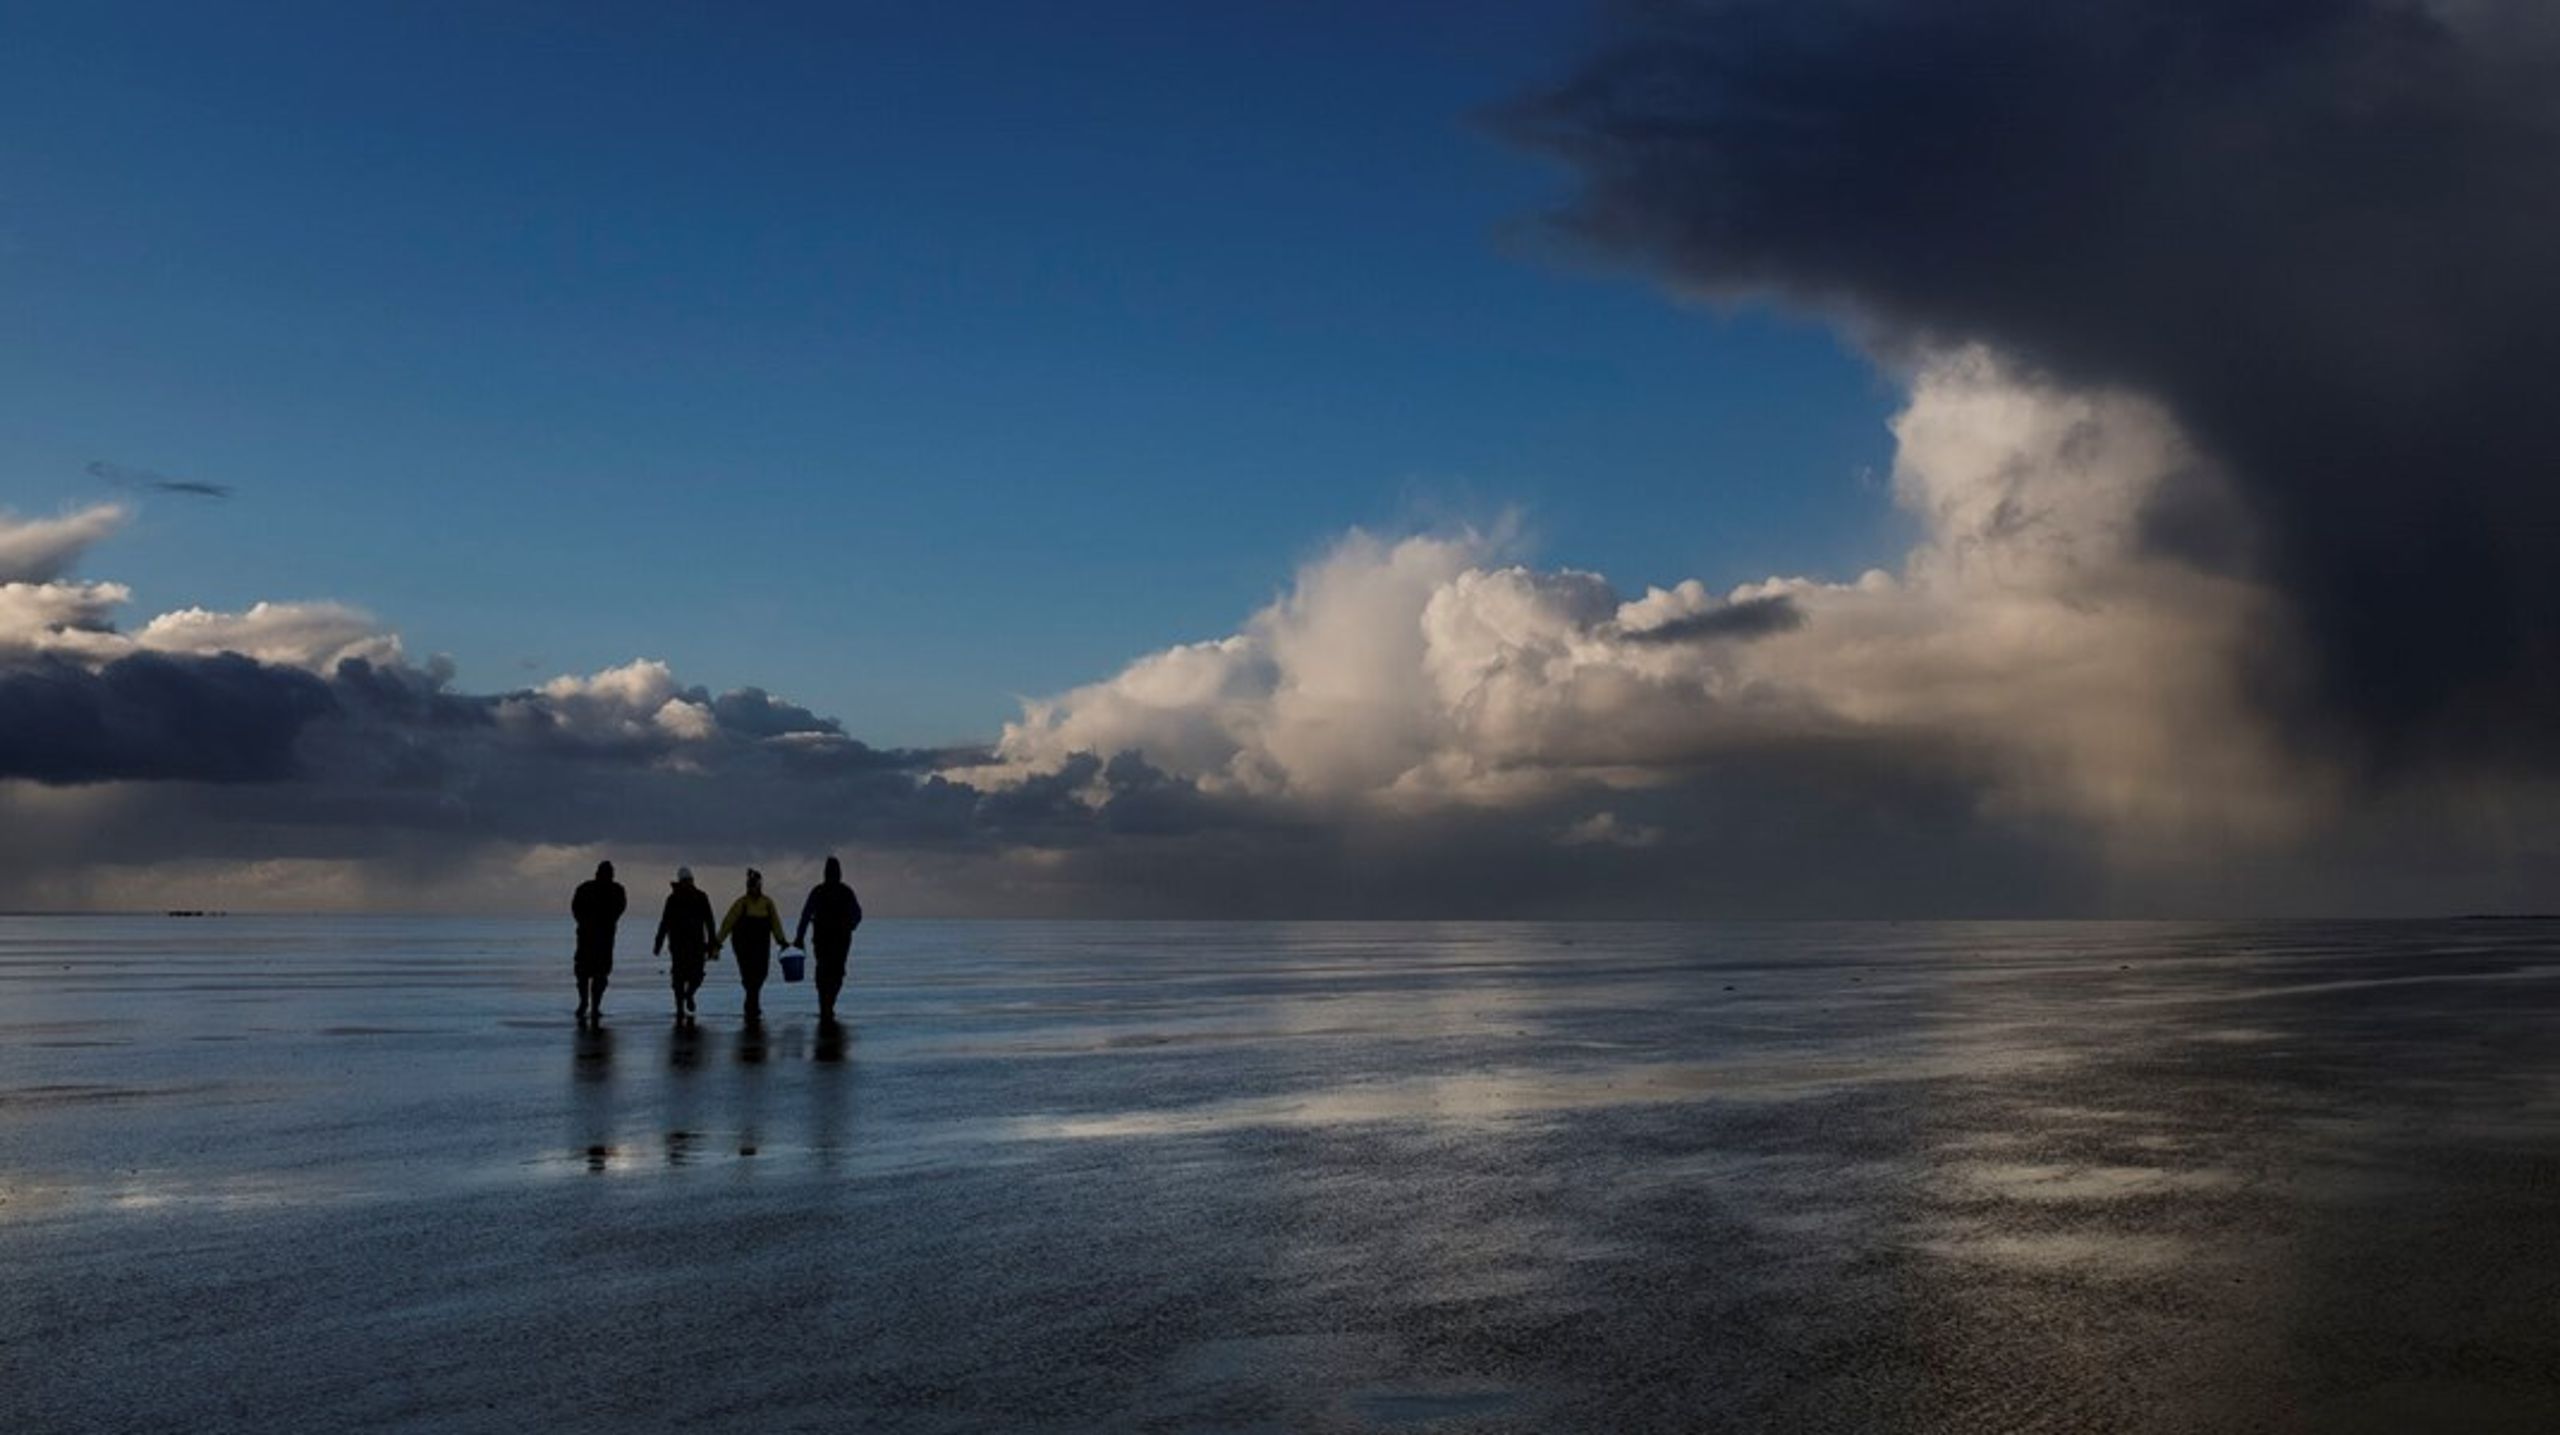 Nationalpark Vadehavet er Danmarks største nationalpark. I&nbsp;2014 besluttede UNESCO's verdensarv komité at udpege den danske del af Vadehavet som verdensarv.